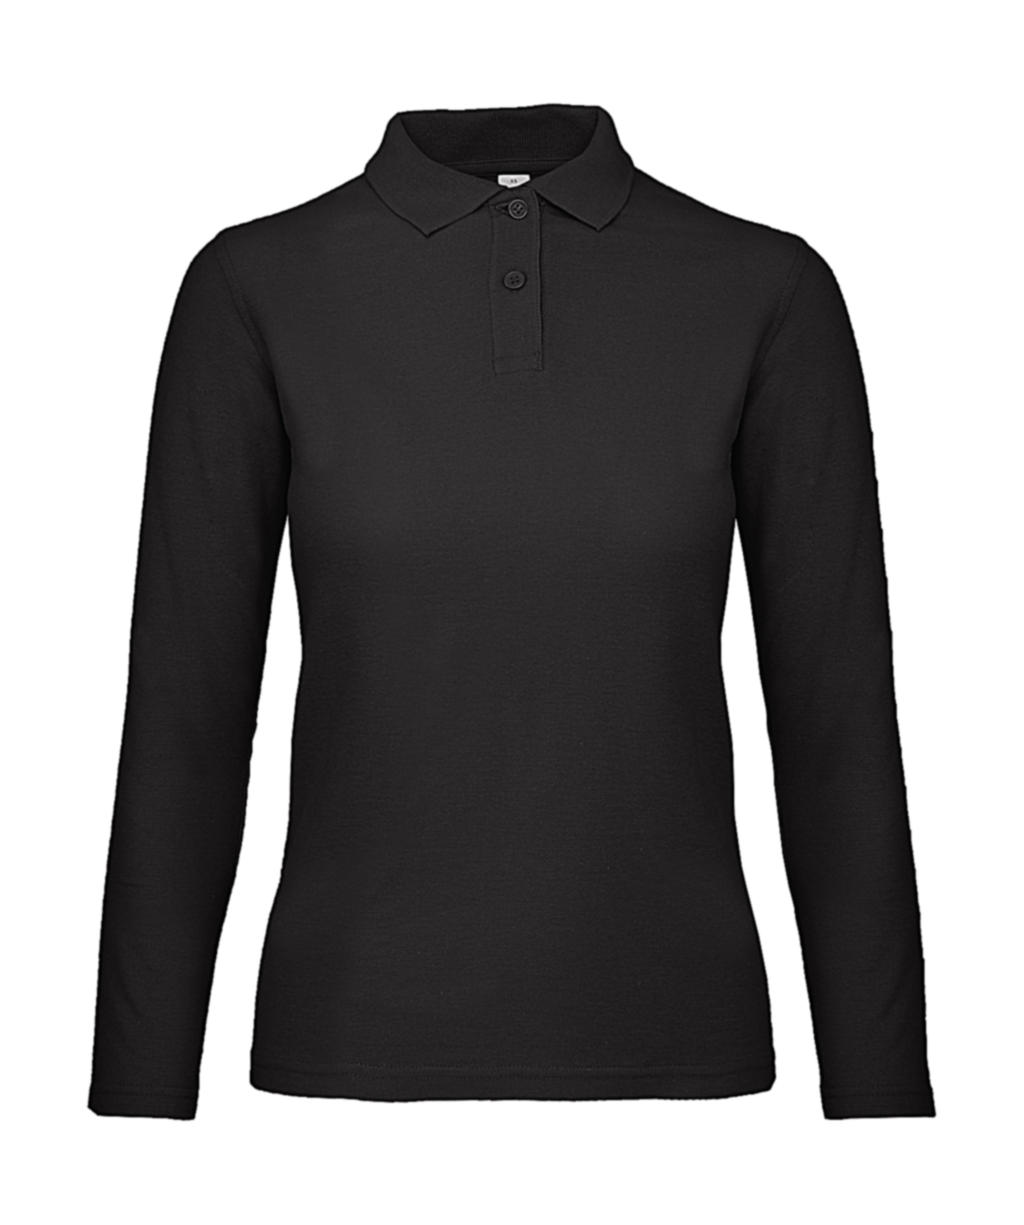  ID.001 LSL /women Polo in Farbe Black